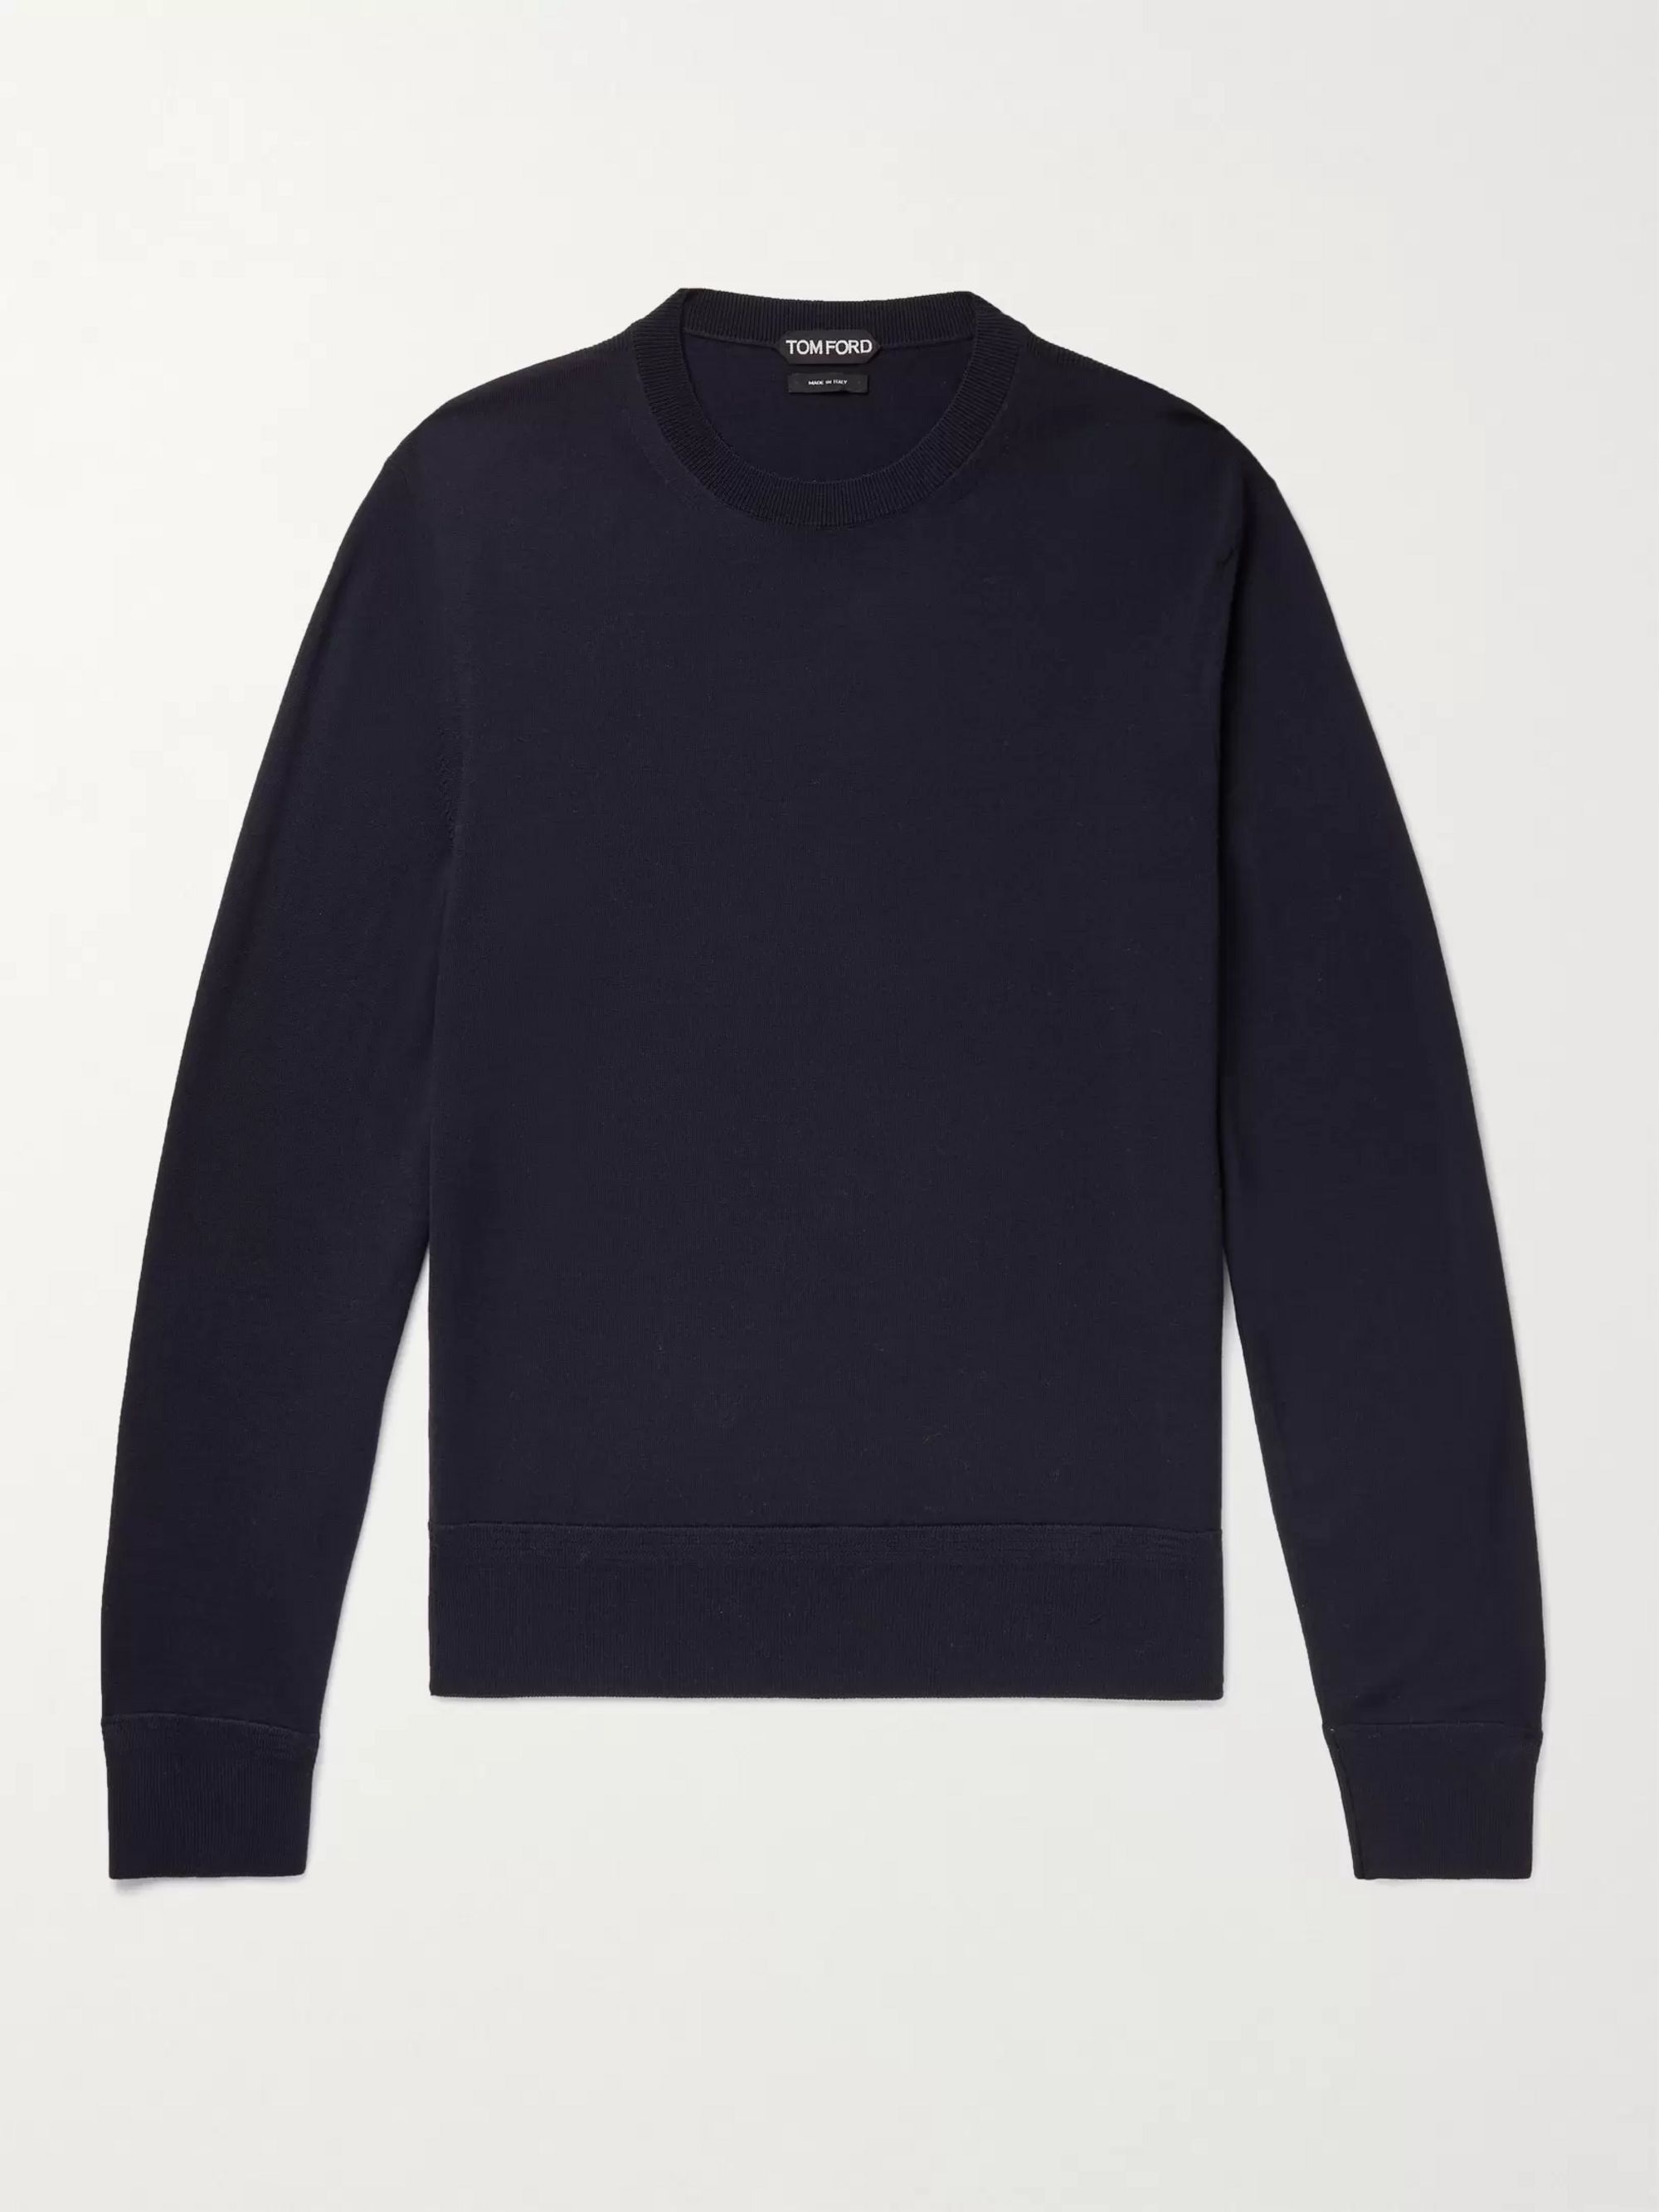 톰 포드 메리노울 스웨터 (슬림핏) Tom Ford Slim-Fit Merino Wool Sweater,Midnight blue